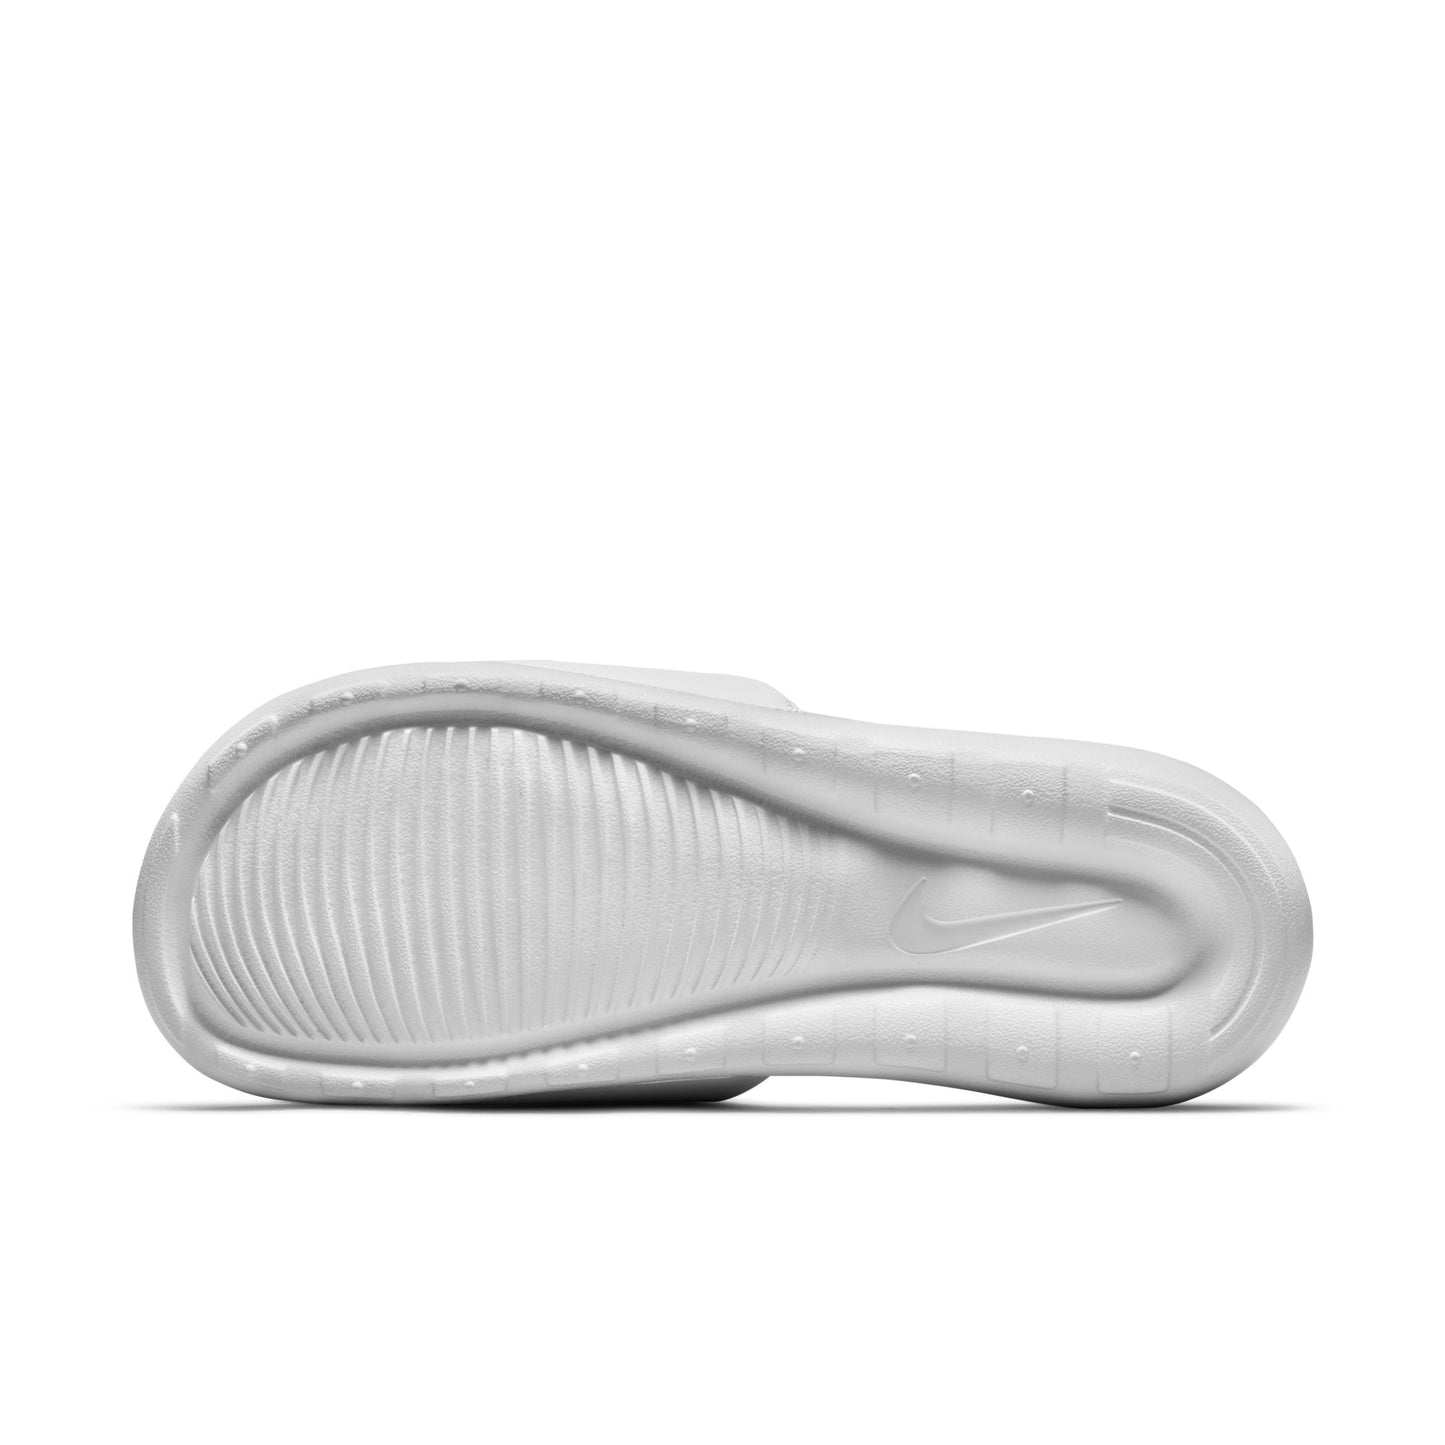 - Nike Womens Victori One Slides White/White - (CN9677 101) - WTS - R2L15